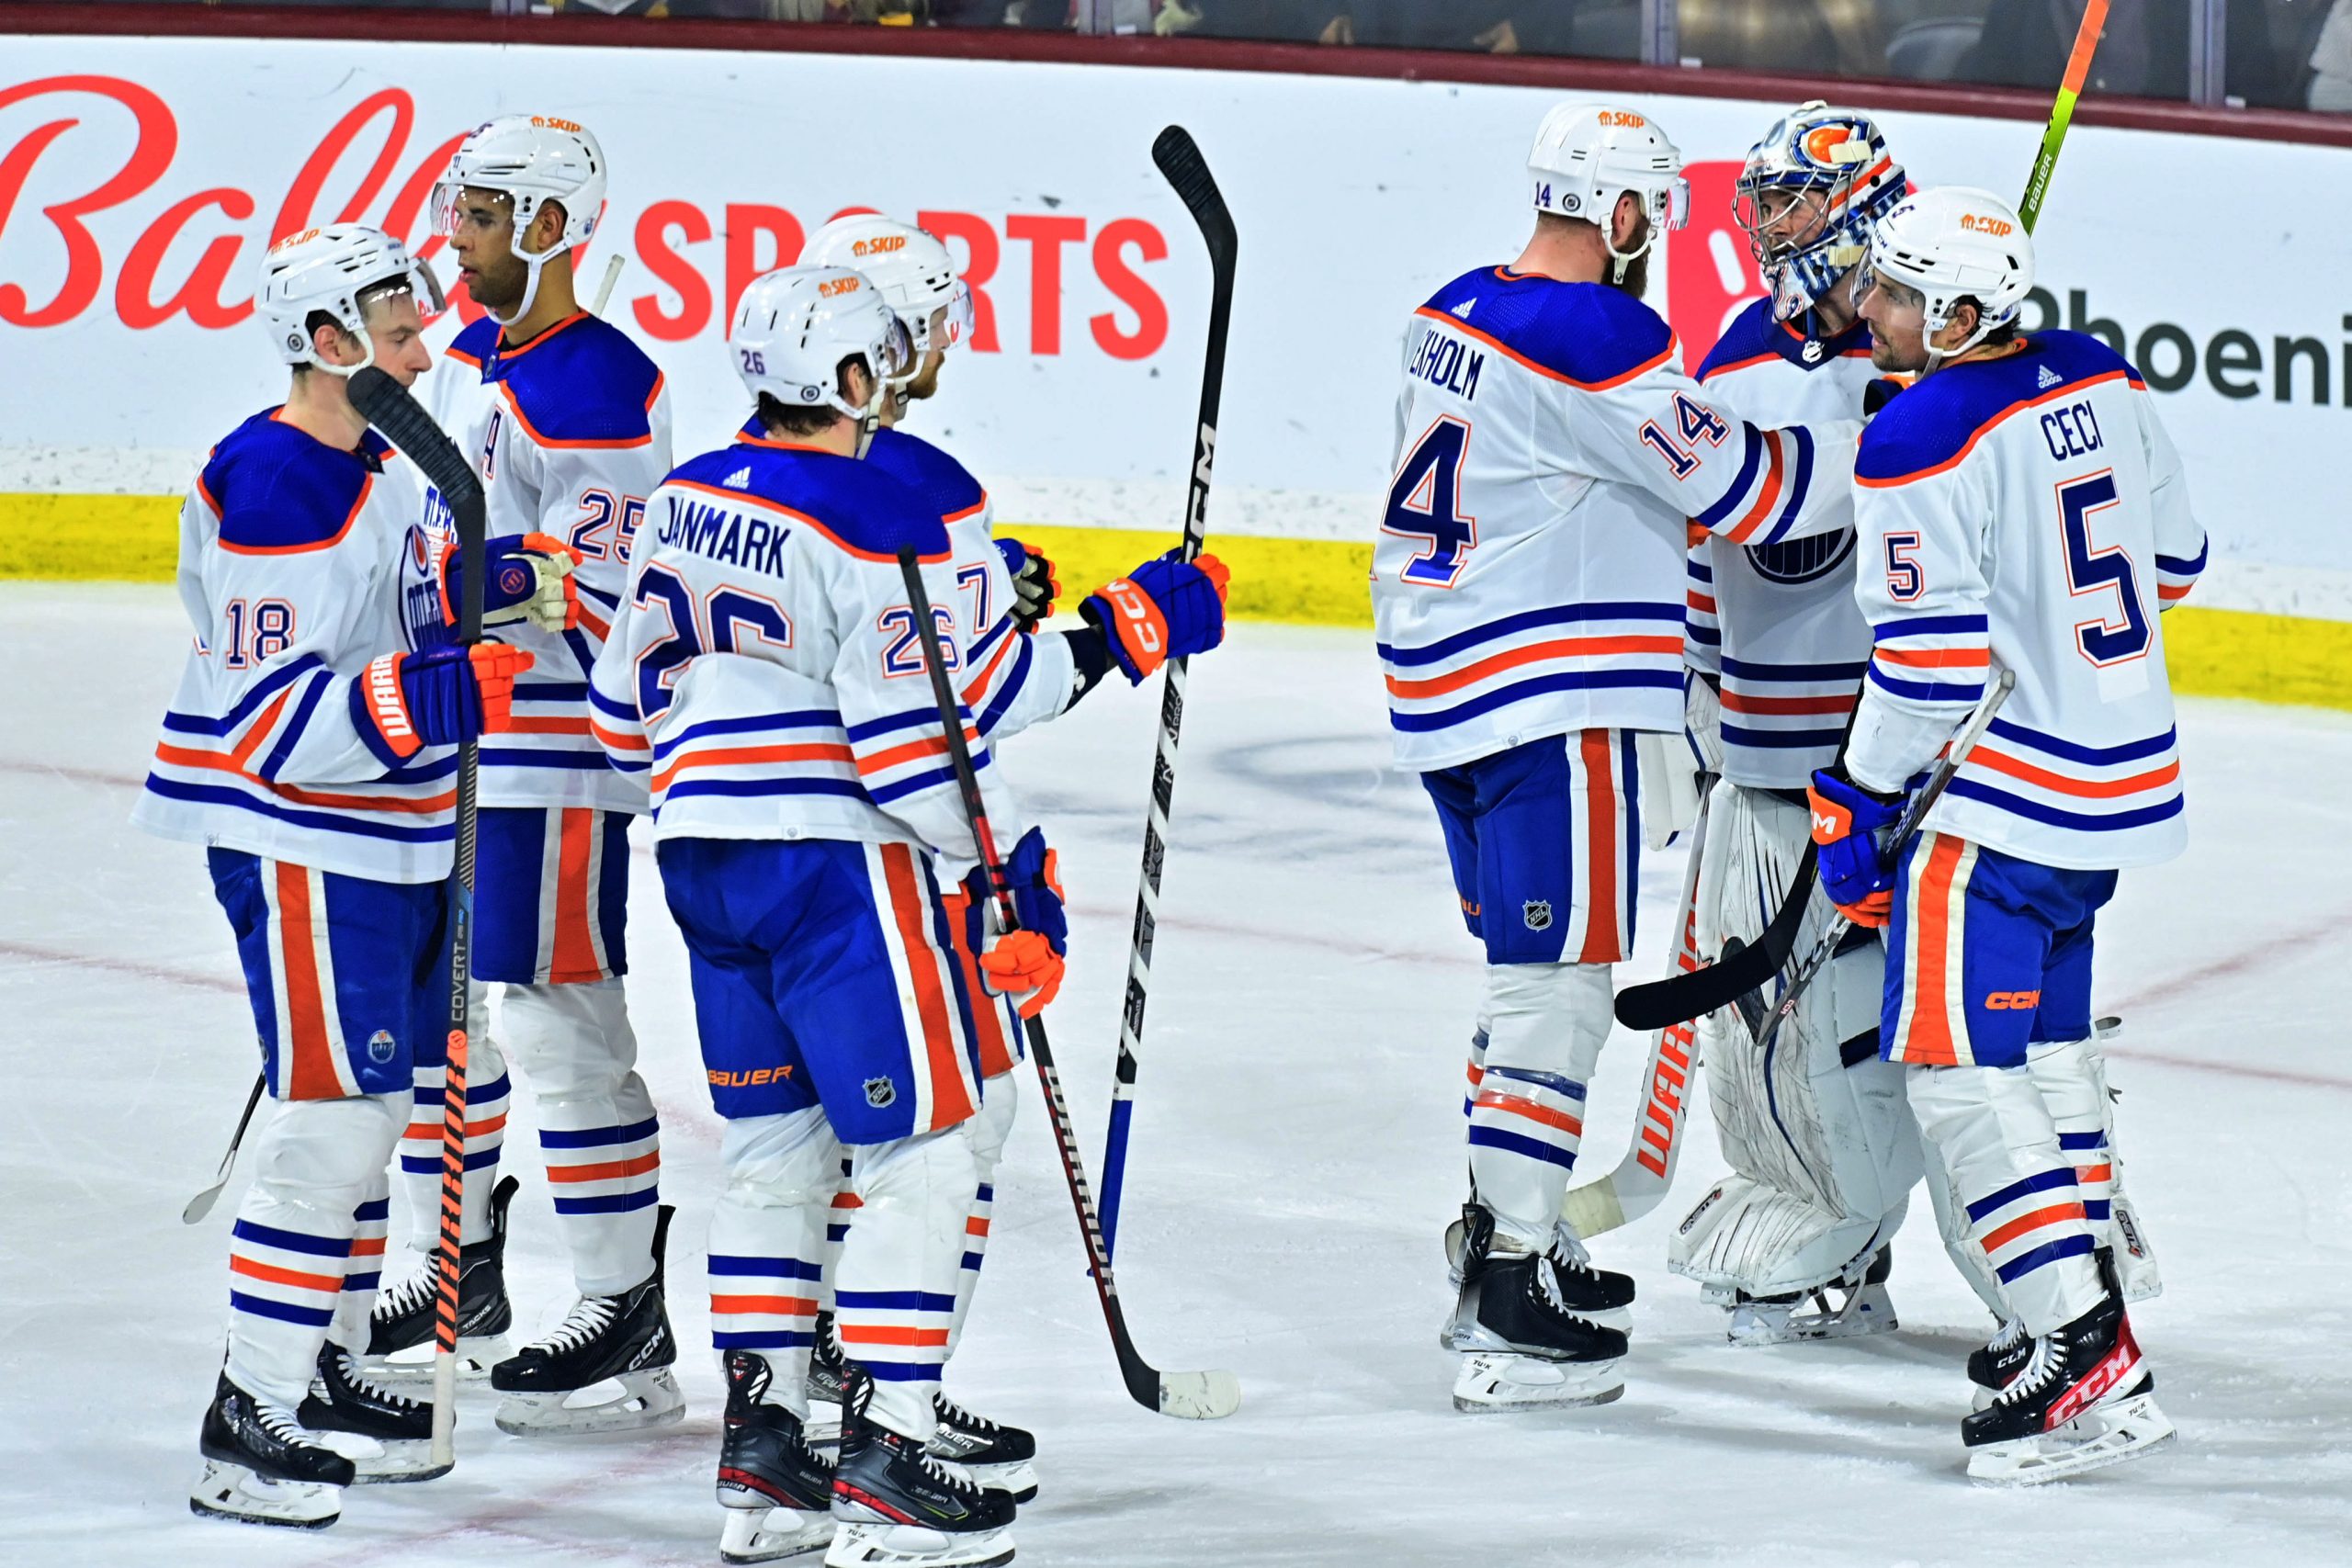 Weekend NHL picks: Oilers continue hot start, Kings top